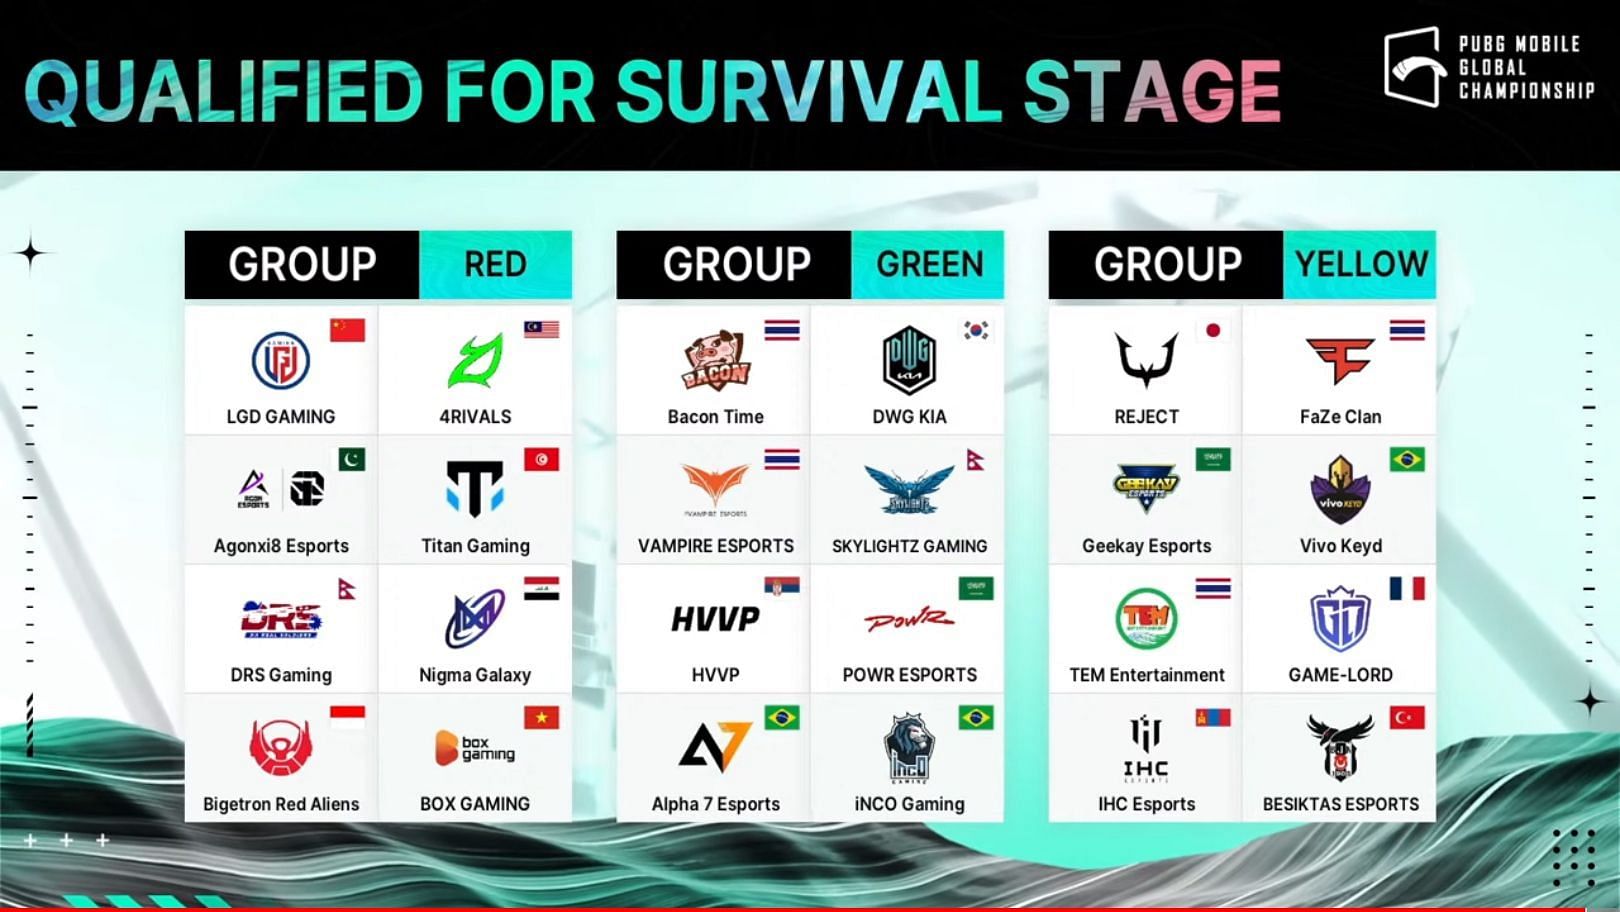 Survival stage participants. Photo via PMGC.